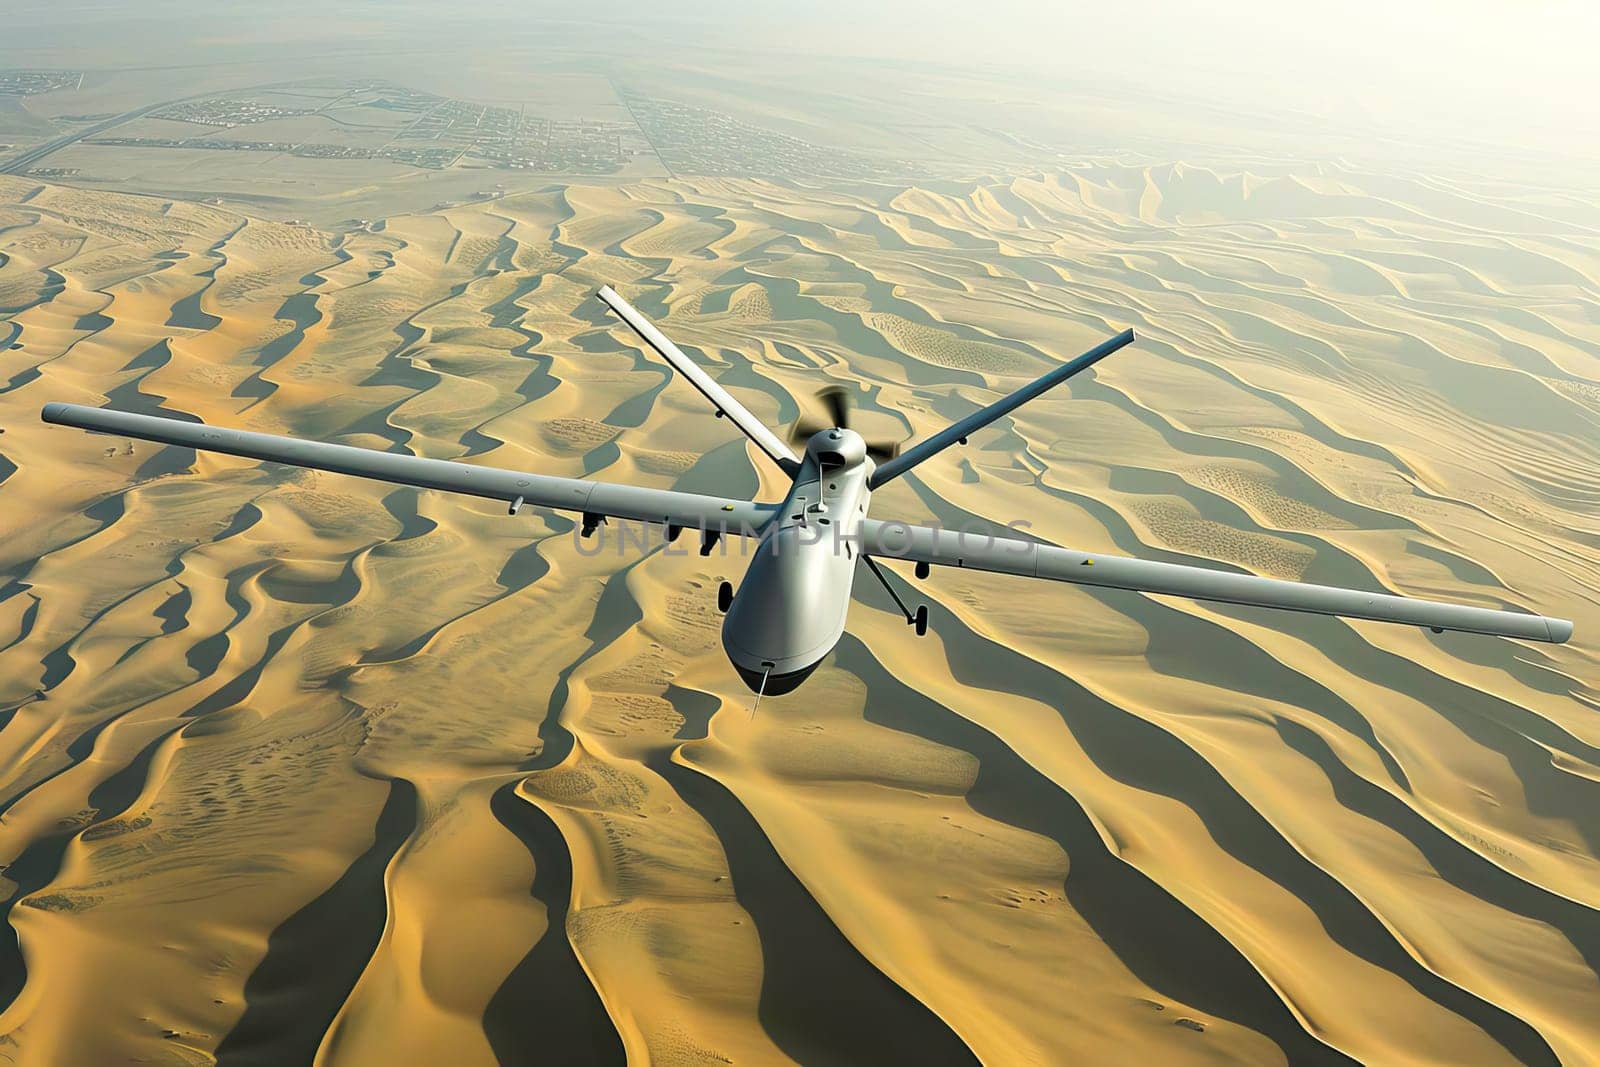 A military plane flies over a barren desert landscape. by vladimka